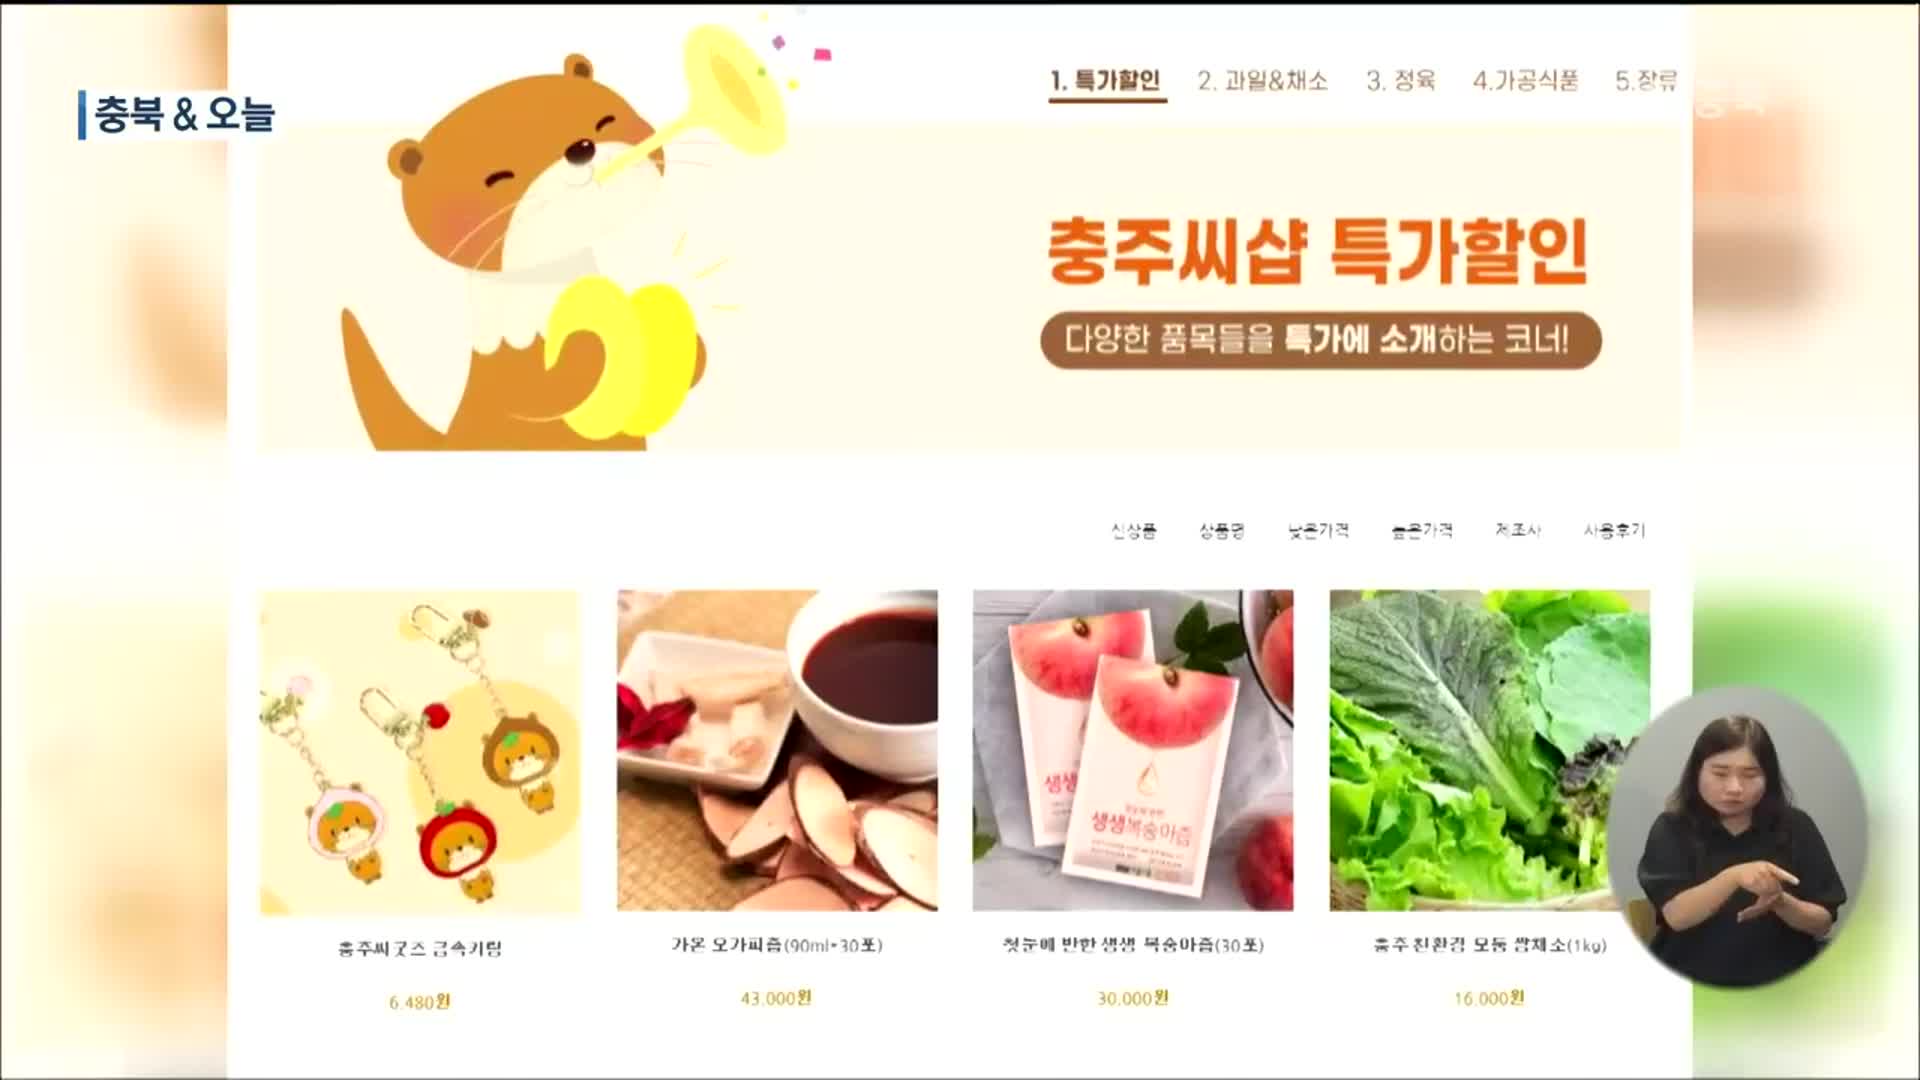 [충북&오늘] 충주 로컬푸드 공식 판매 쇼핑몰 ‘충주씨’ 개설